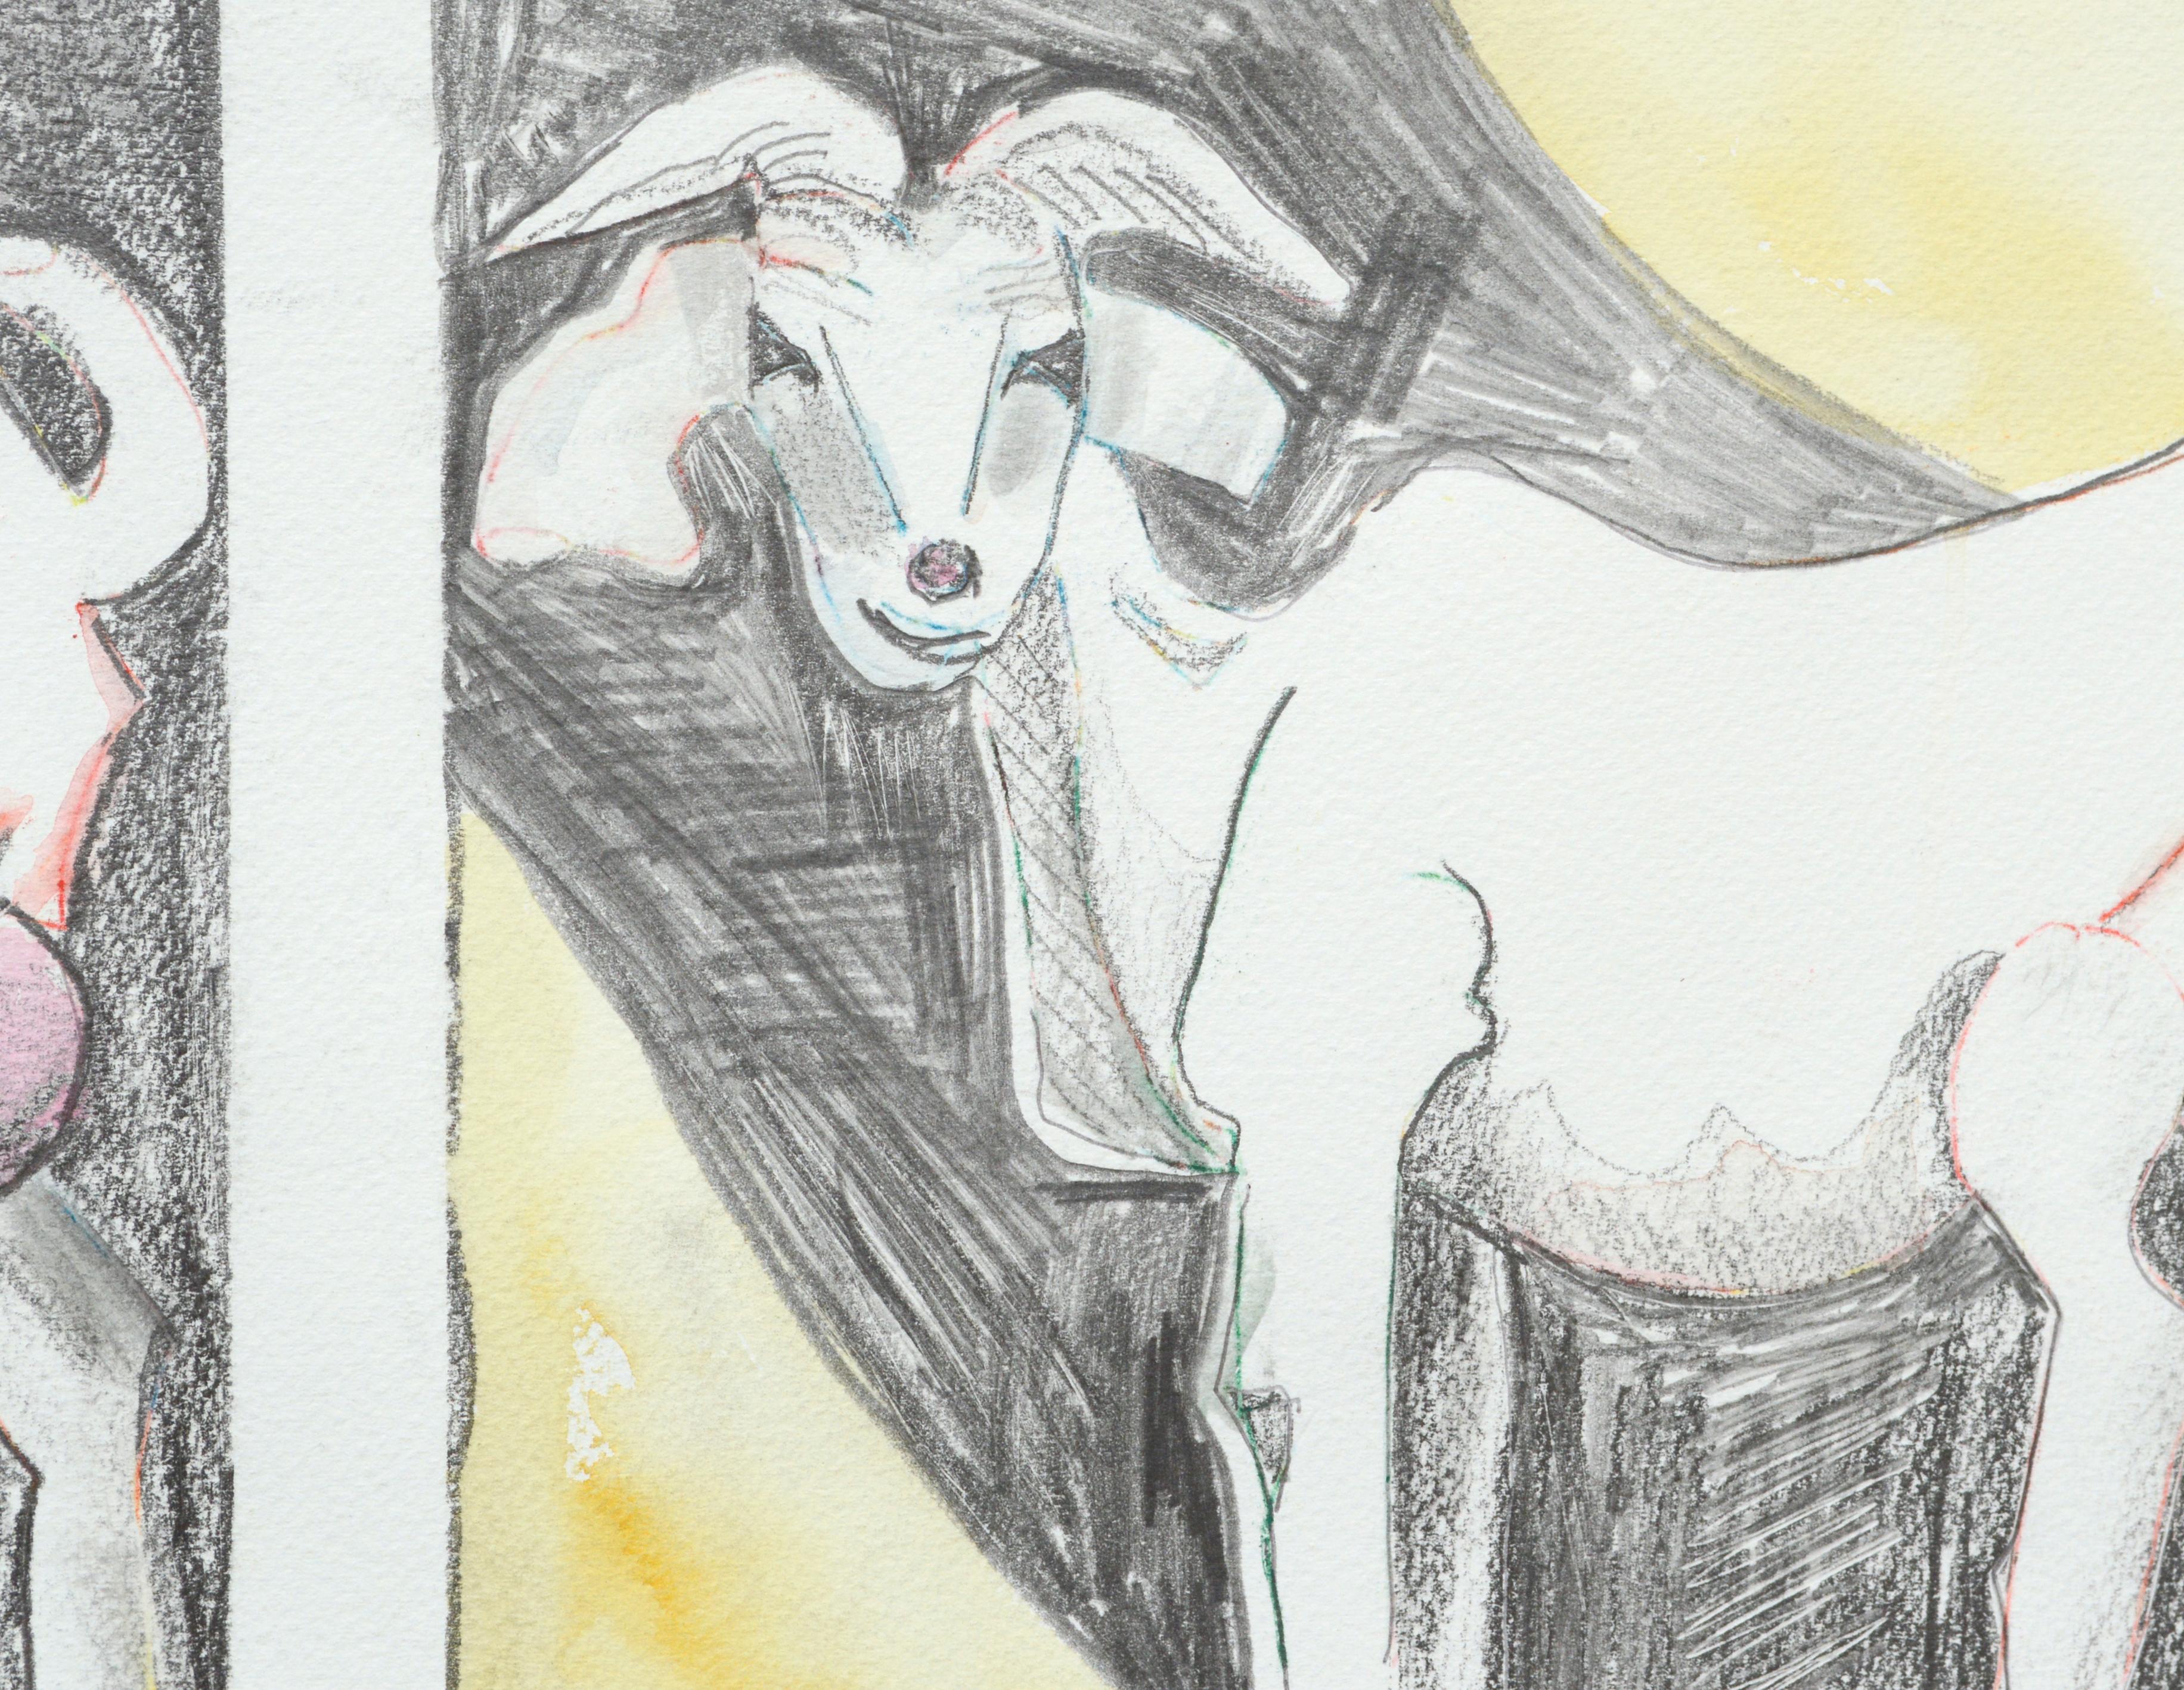 Portraits ludiques de six chèvres, une série disposée en panneaux, par Karen Druker (américaine, 1945). Signé 